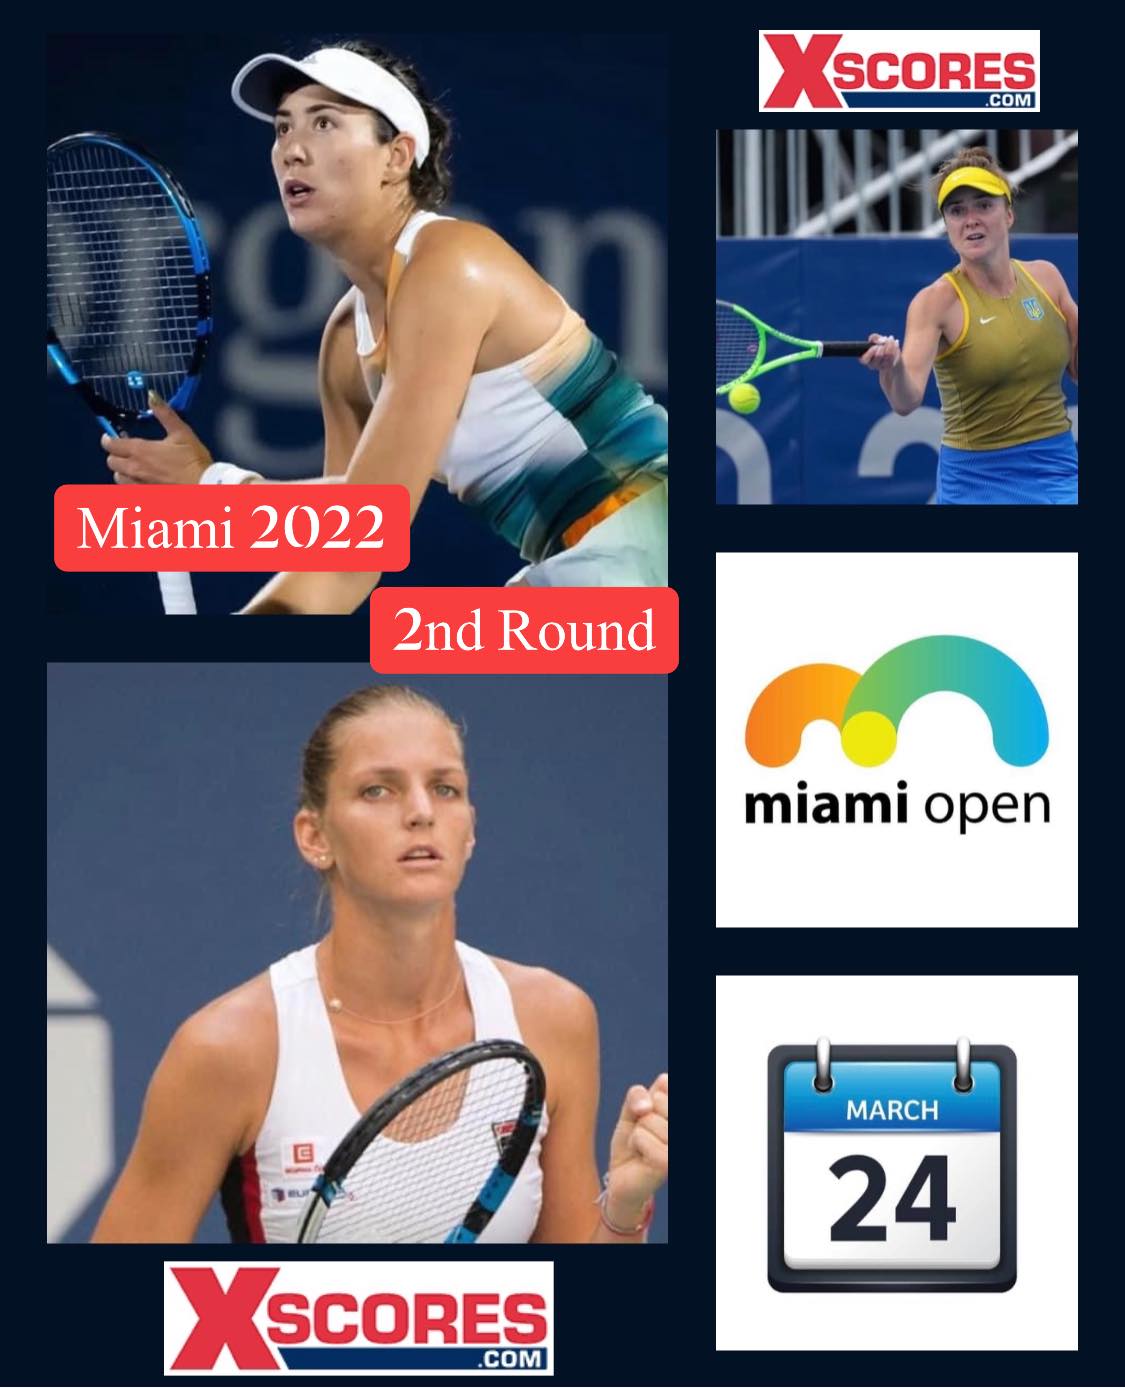 WTA Tour 1000 Miami Open Thu 24th March 2022 Xscores News